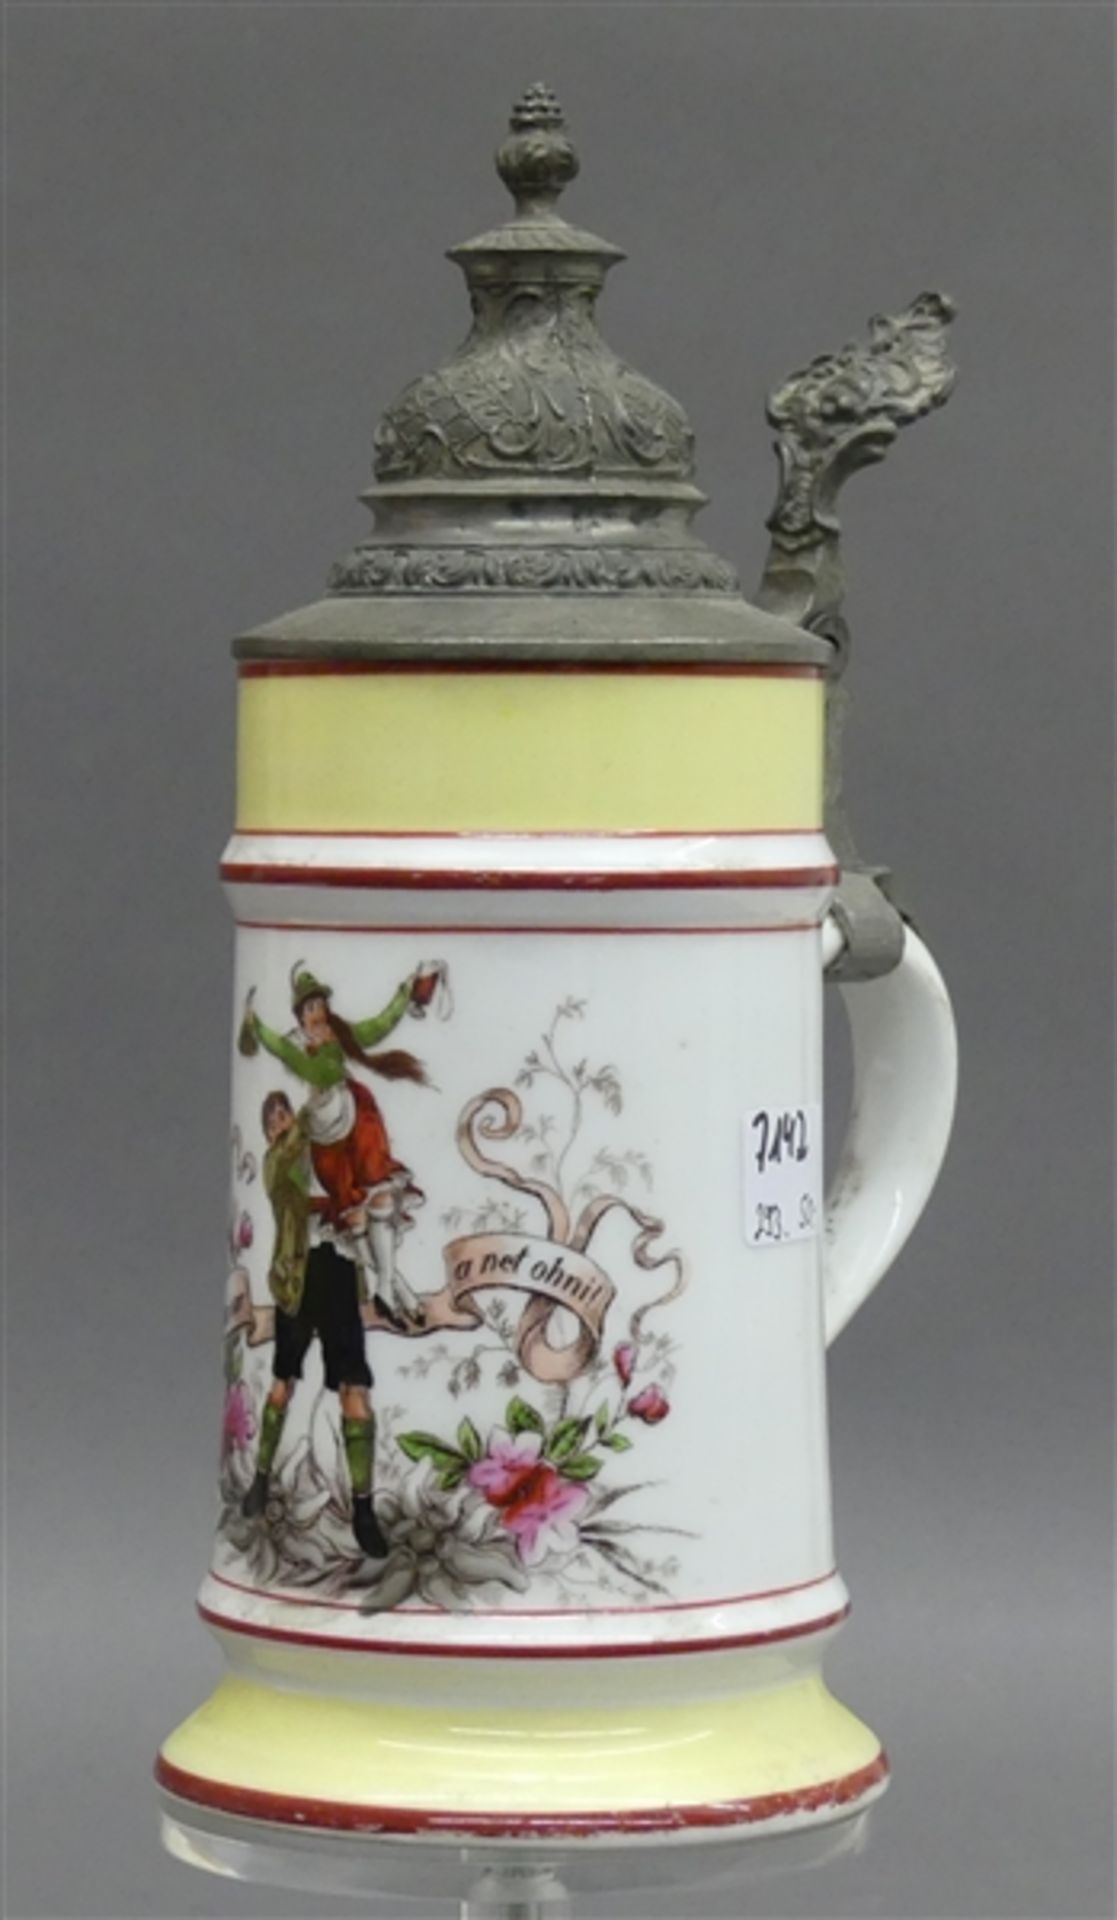 Bierkrug Porzellan, um 1900, Trinkmotiv, Sinnspruch, Bodenbild, Zinndeckel, h 25 cm,